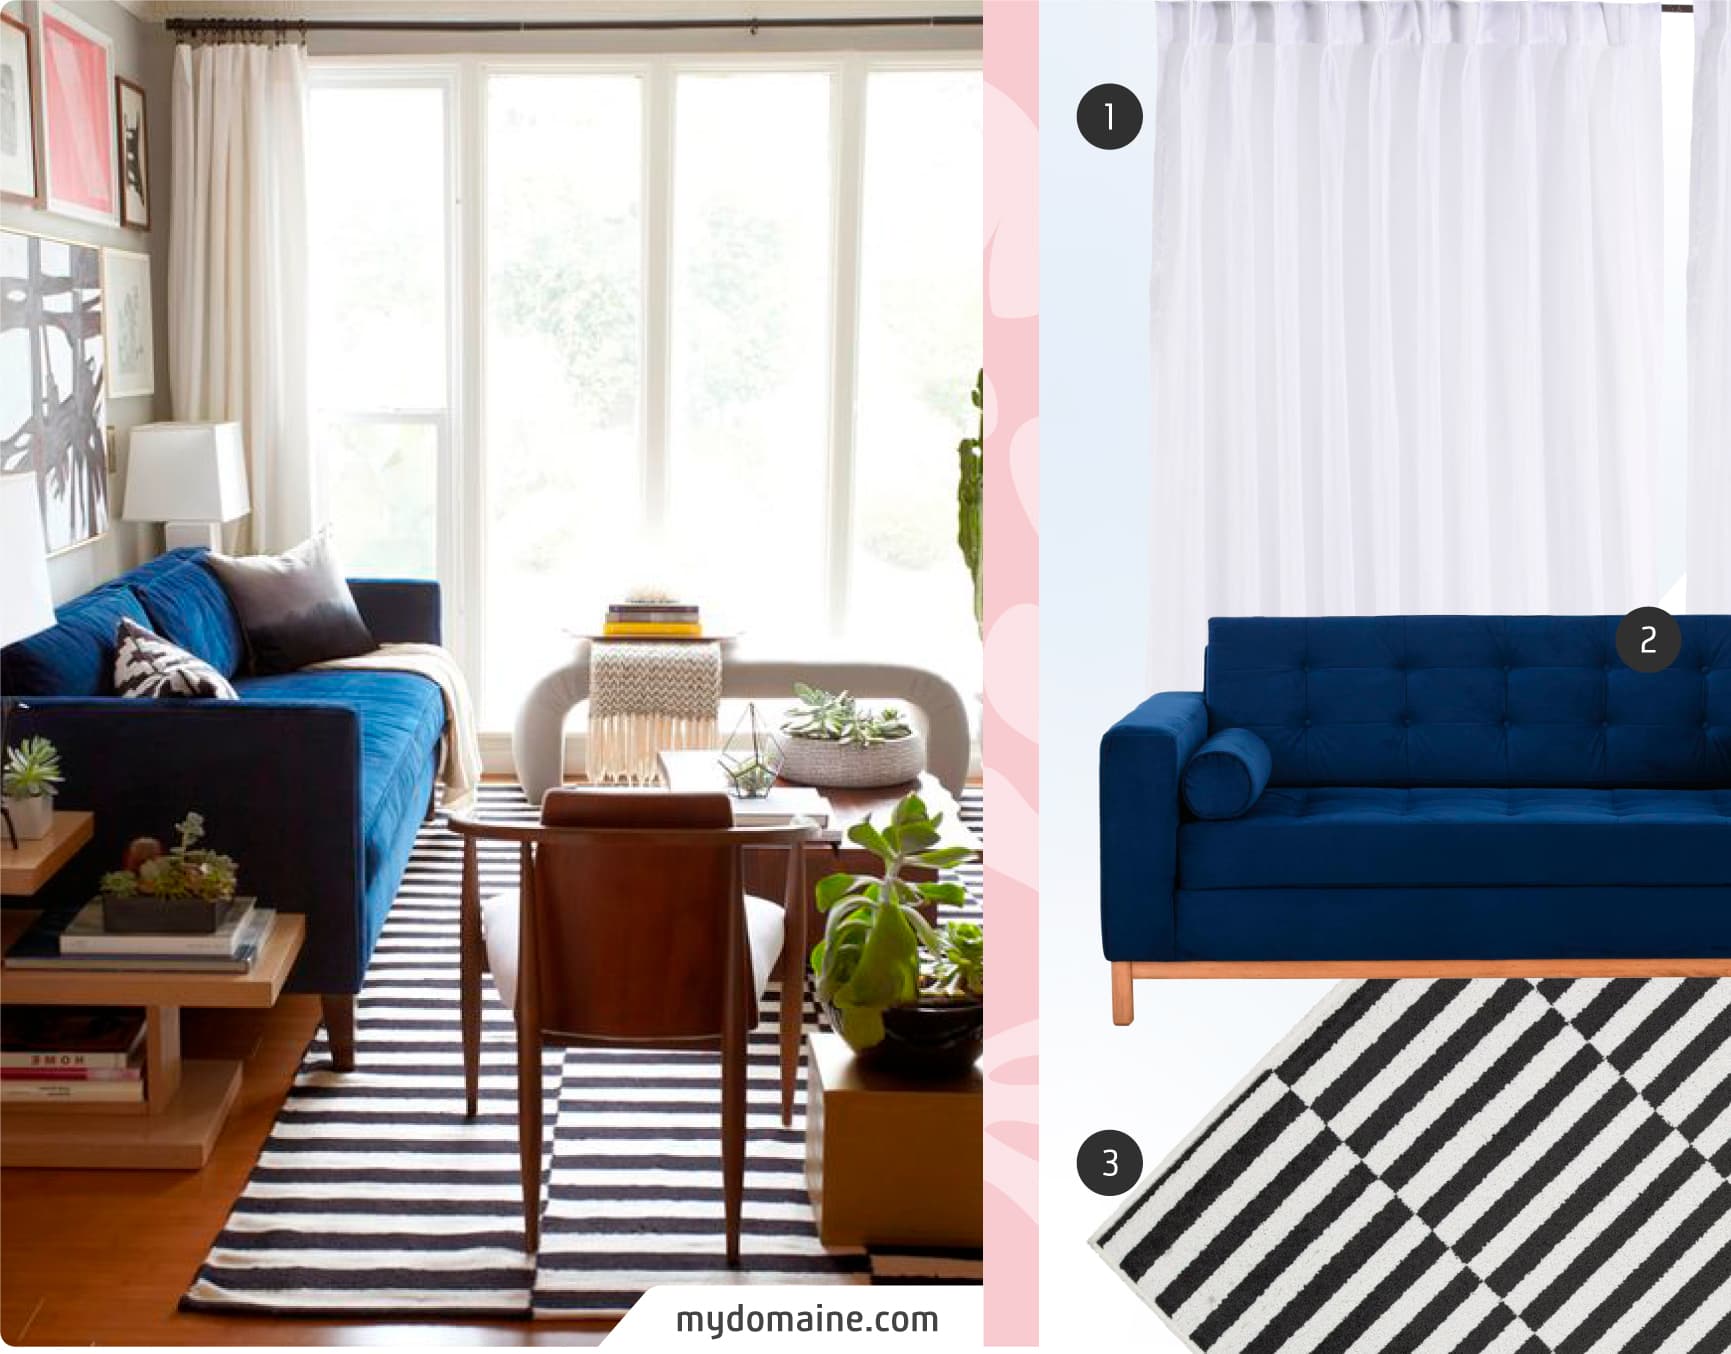 Moodboard de inspiración con una foto de living de estilo mid century, junto a 3 productos disponibles en Sodimac: sofá de tela azul marino con patas de madera, alfombra con líneas blancas y negras y cortina de tela blanca.